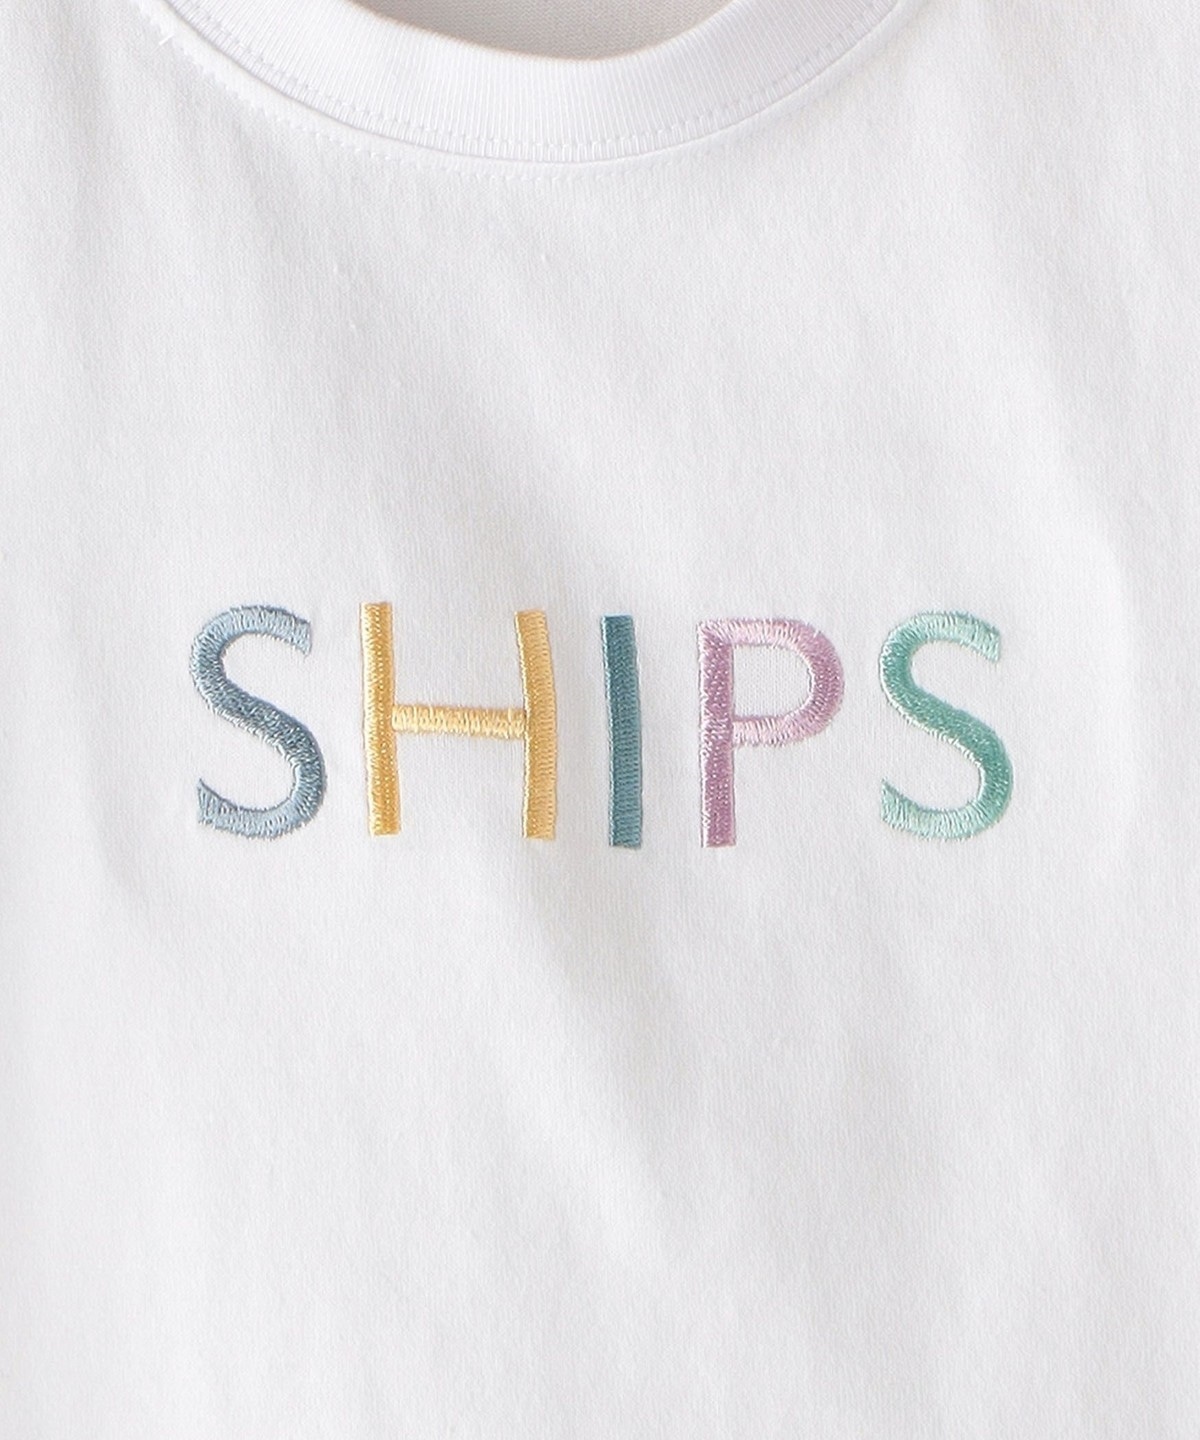 SHIPS KIDS:SHIPS ロゴ TEE(80～90cm): Tシャツ/カットソー SHIPS 公式